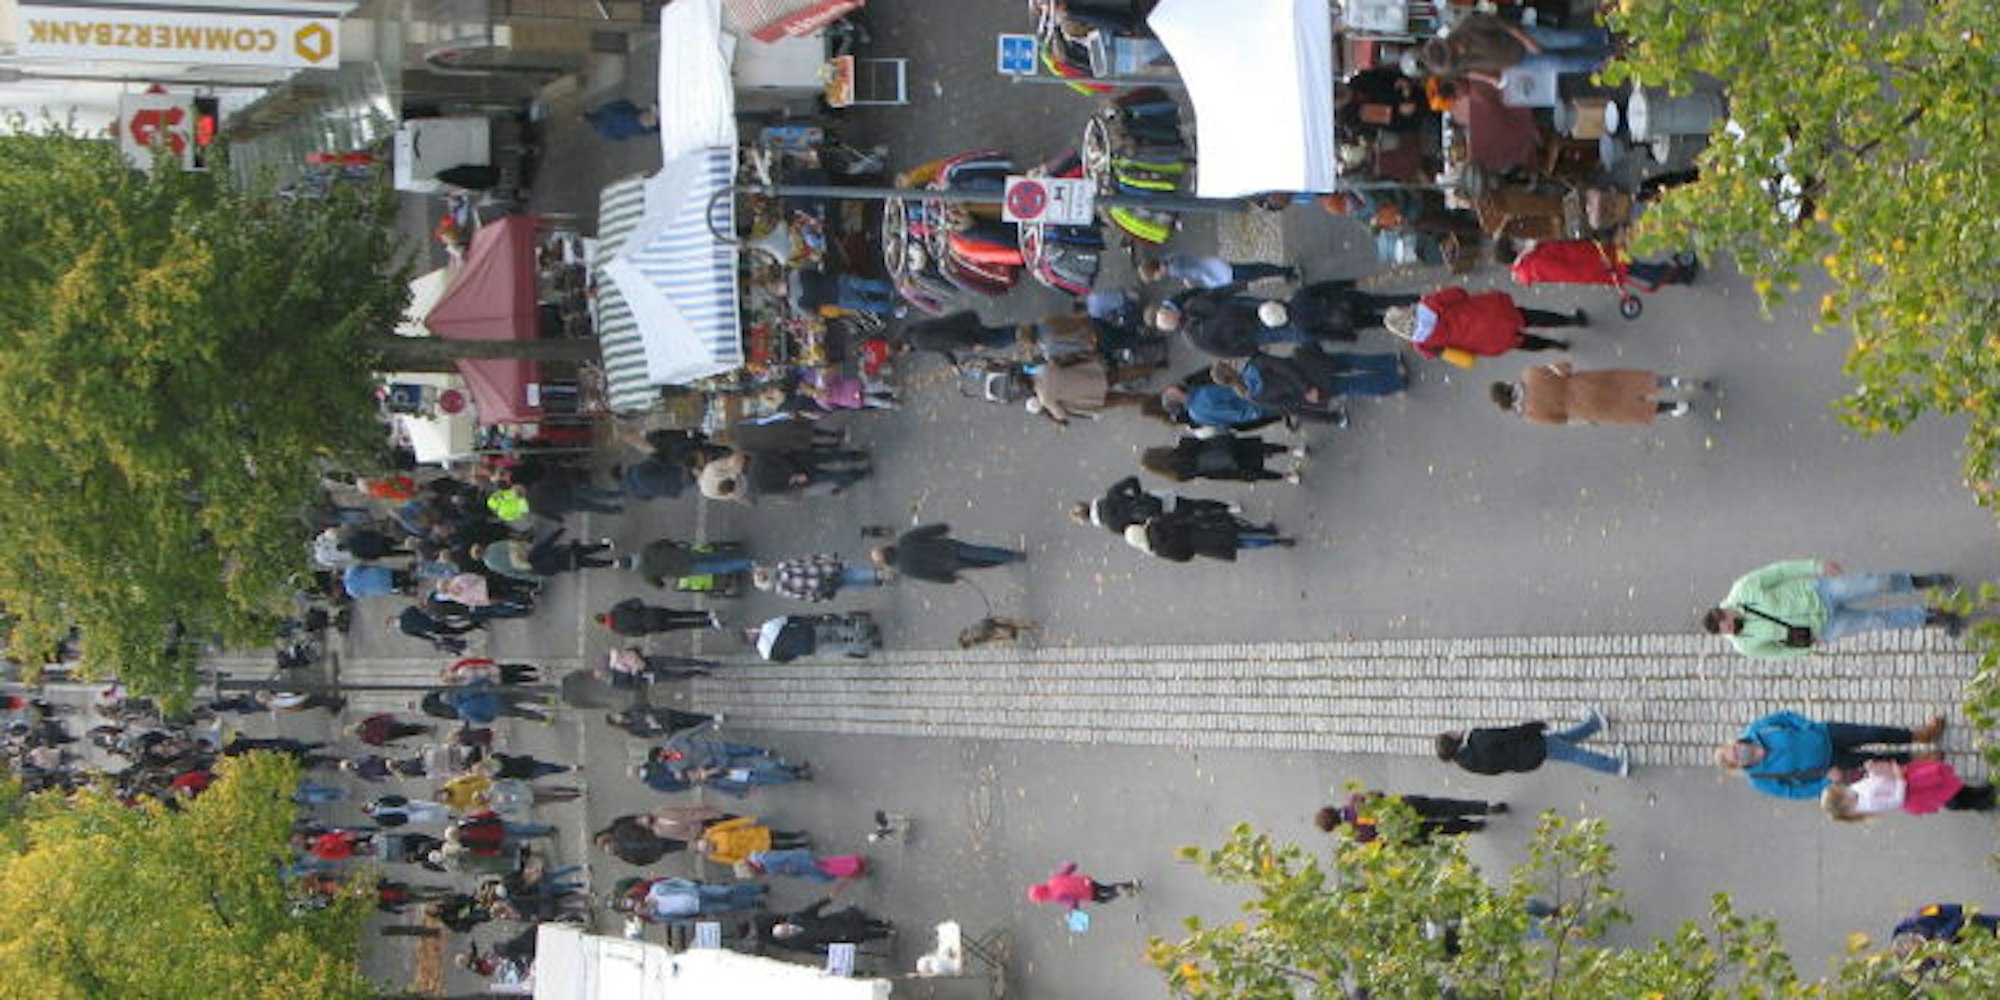 Weniger Stände als zu Nicht-Corona-Zeiten säumten beim Hennefer Stadtflohmarkt die Frankfurter Straße. Aus dem Riesenrad bot sich ein Überblick aus der Vogelperspektive.